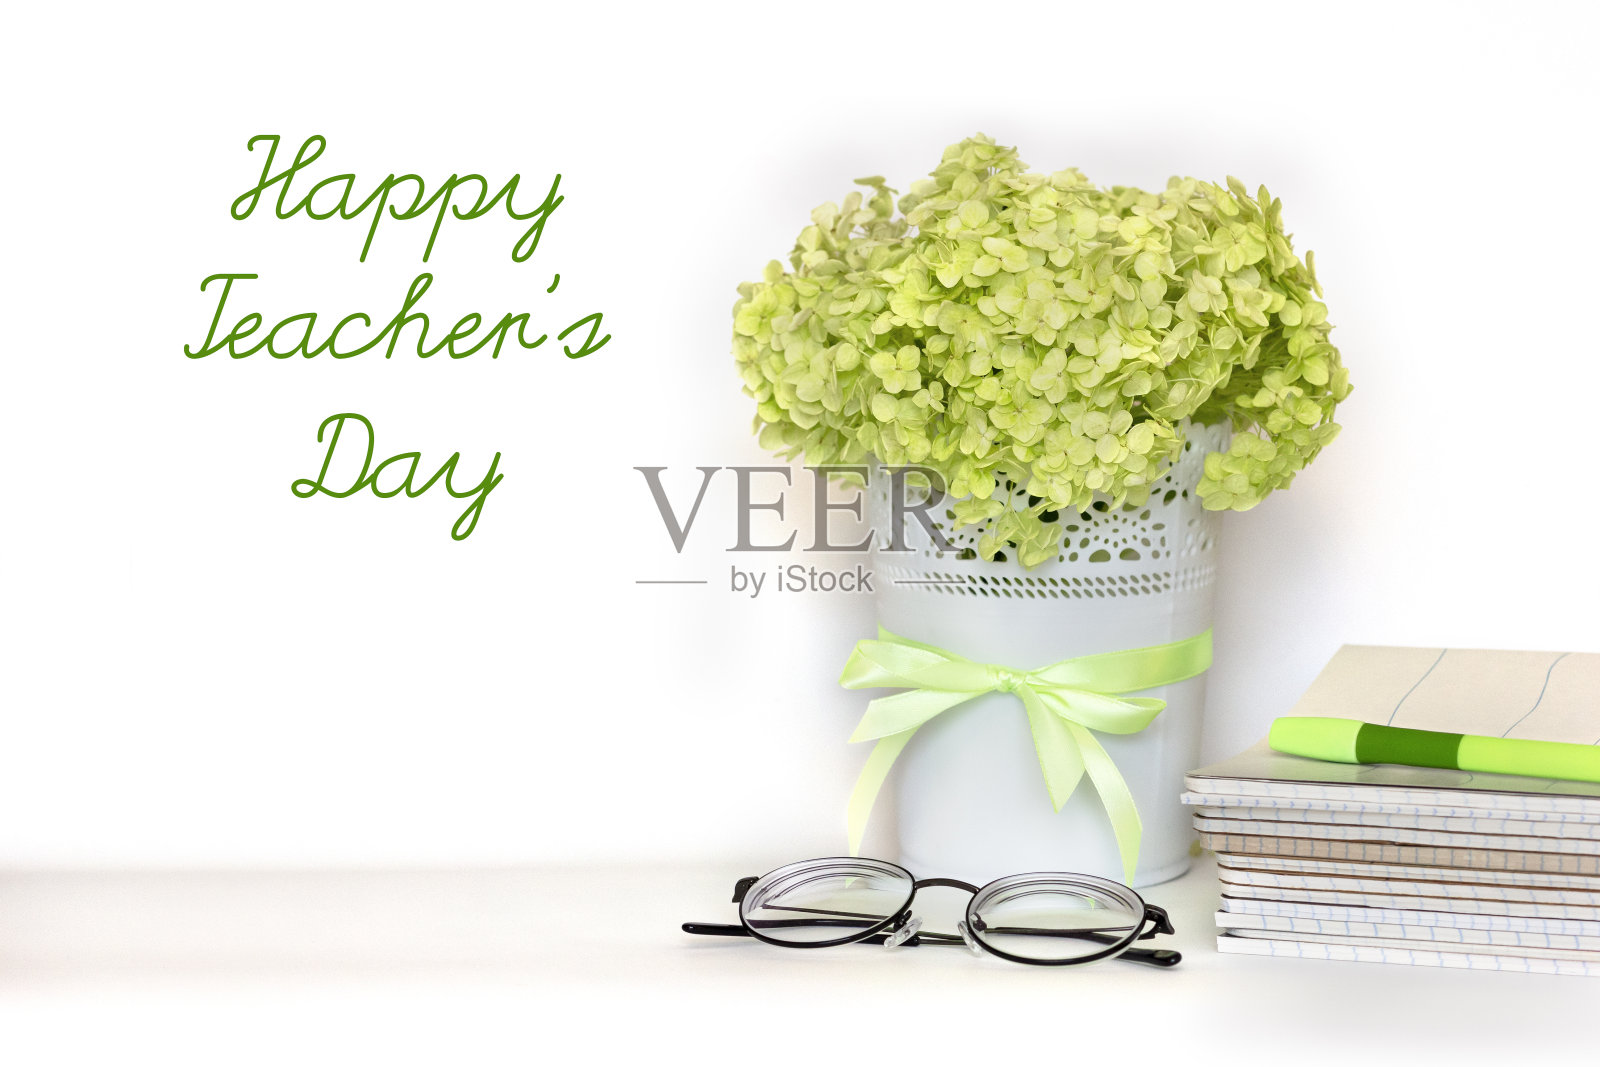 祝教师节贺卡快乐——一束淡绿色的绣球枝插在带缎带的花盆里，一堆笔记本、眼镜和钢笔放在白色的背景上。国际学校教师节照片摄影图片